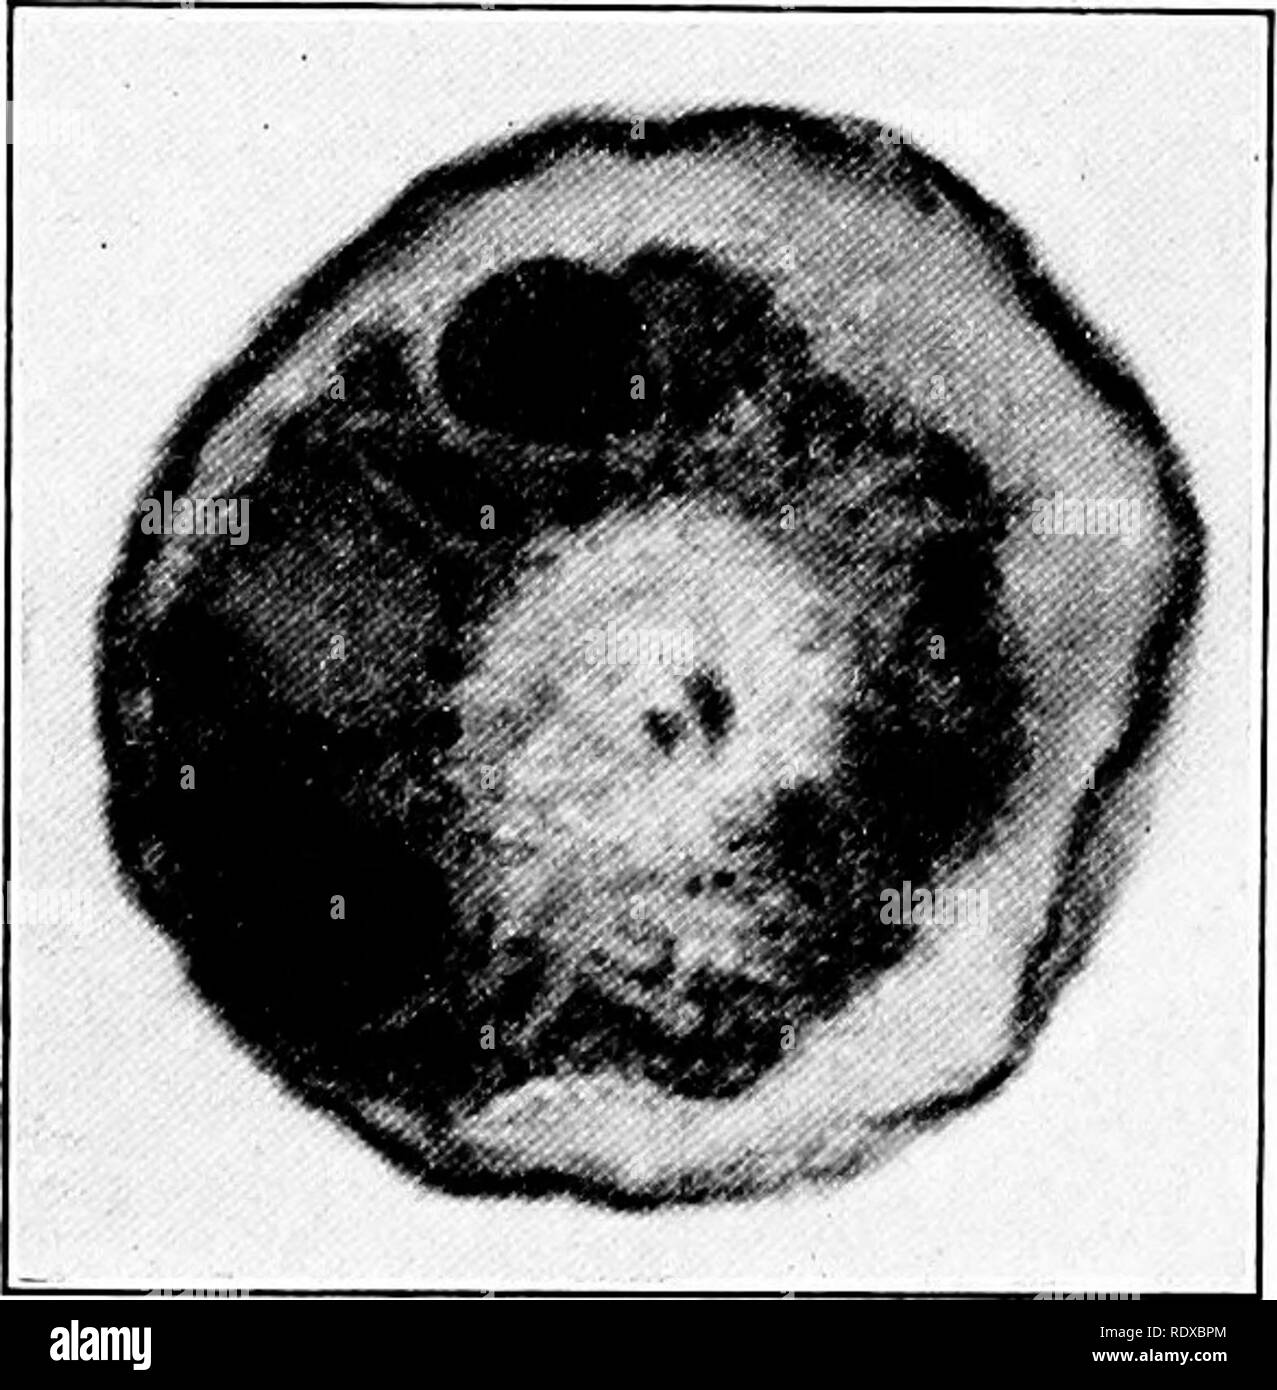 . Protozoo?. Protozoen; Protozoen, Pathogenen. 116 PROTOPLASMIC ALTER VON PROTOZOEN Die erste konkrete Beobachtungen, die nach chromidia Bildung wurden von Hertwig ('99) in Verbindung mit der Struktur des mit einer Schale versehenen rhizopod Arcella vulgaris. Zuvor hatten Beobachter fest, dass Chromatin-hke Granulat in der gesamten Zelle Körper distriljuted sind in vielen dieser Arten, aber Hertwig war der Erste, der der Ursprung des Materials aus dem Zellkern in arcella zu beschreiben und zu zeigen, dass es mit einem dichten Zone von Granulaten im Protoplasma (Abb. 44). Damals Hertwig beschrieben dieses Material unter der Stockfoto